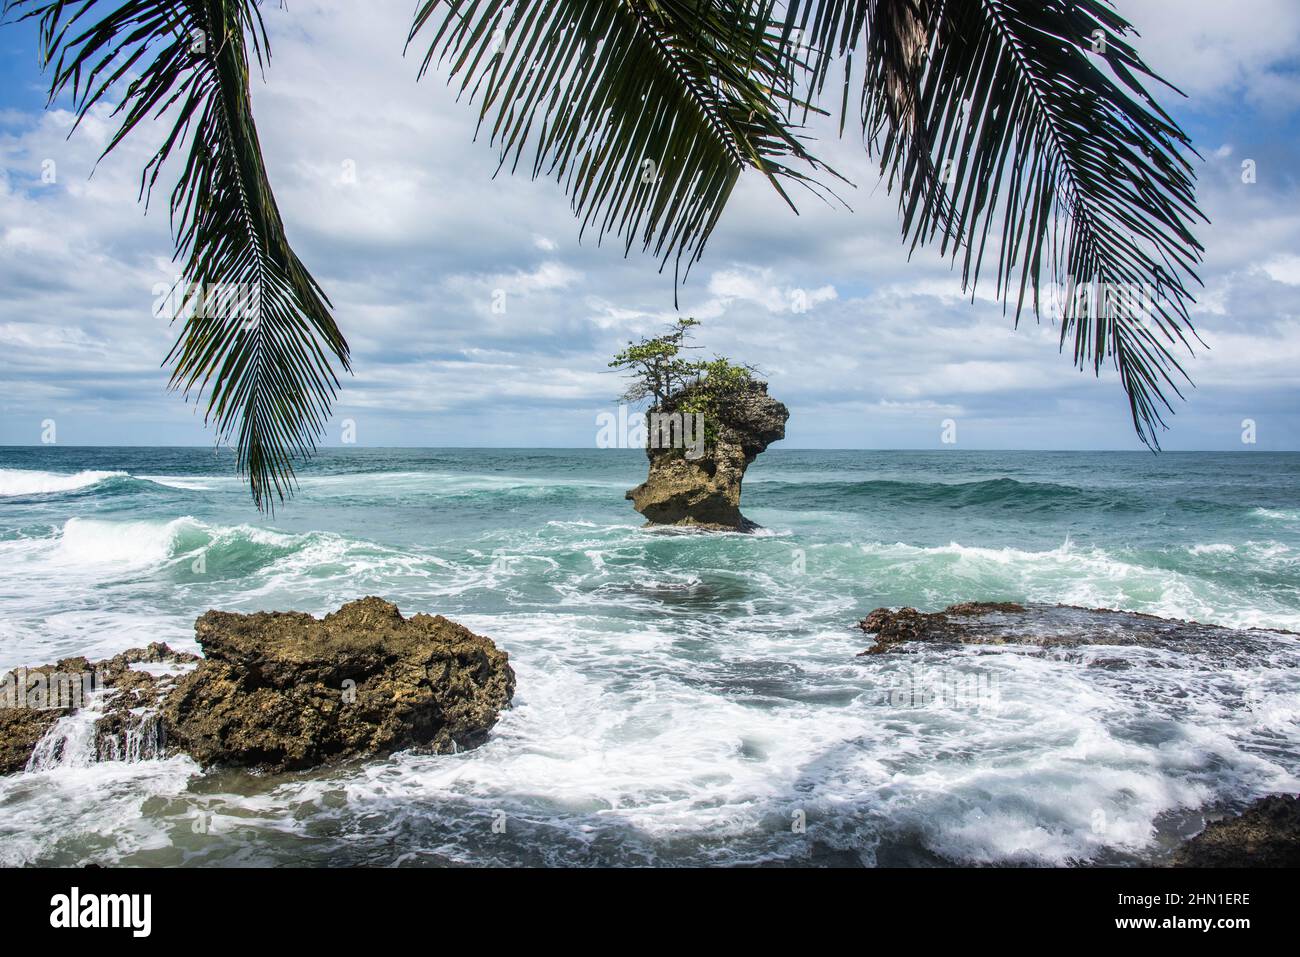 Hermosos paisajes y paisajes marinos en el Refugio de Vida Silvestre Gandoca-Manzanillo, Costa Rica Foto de stock